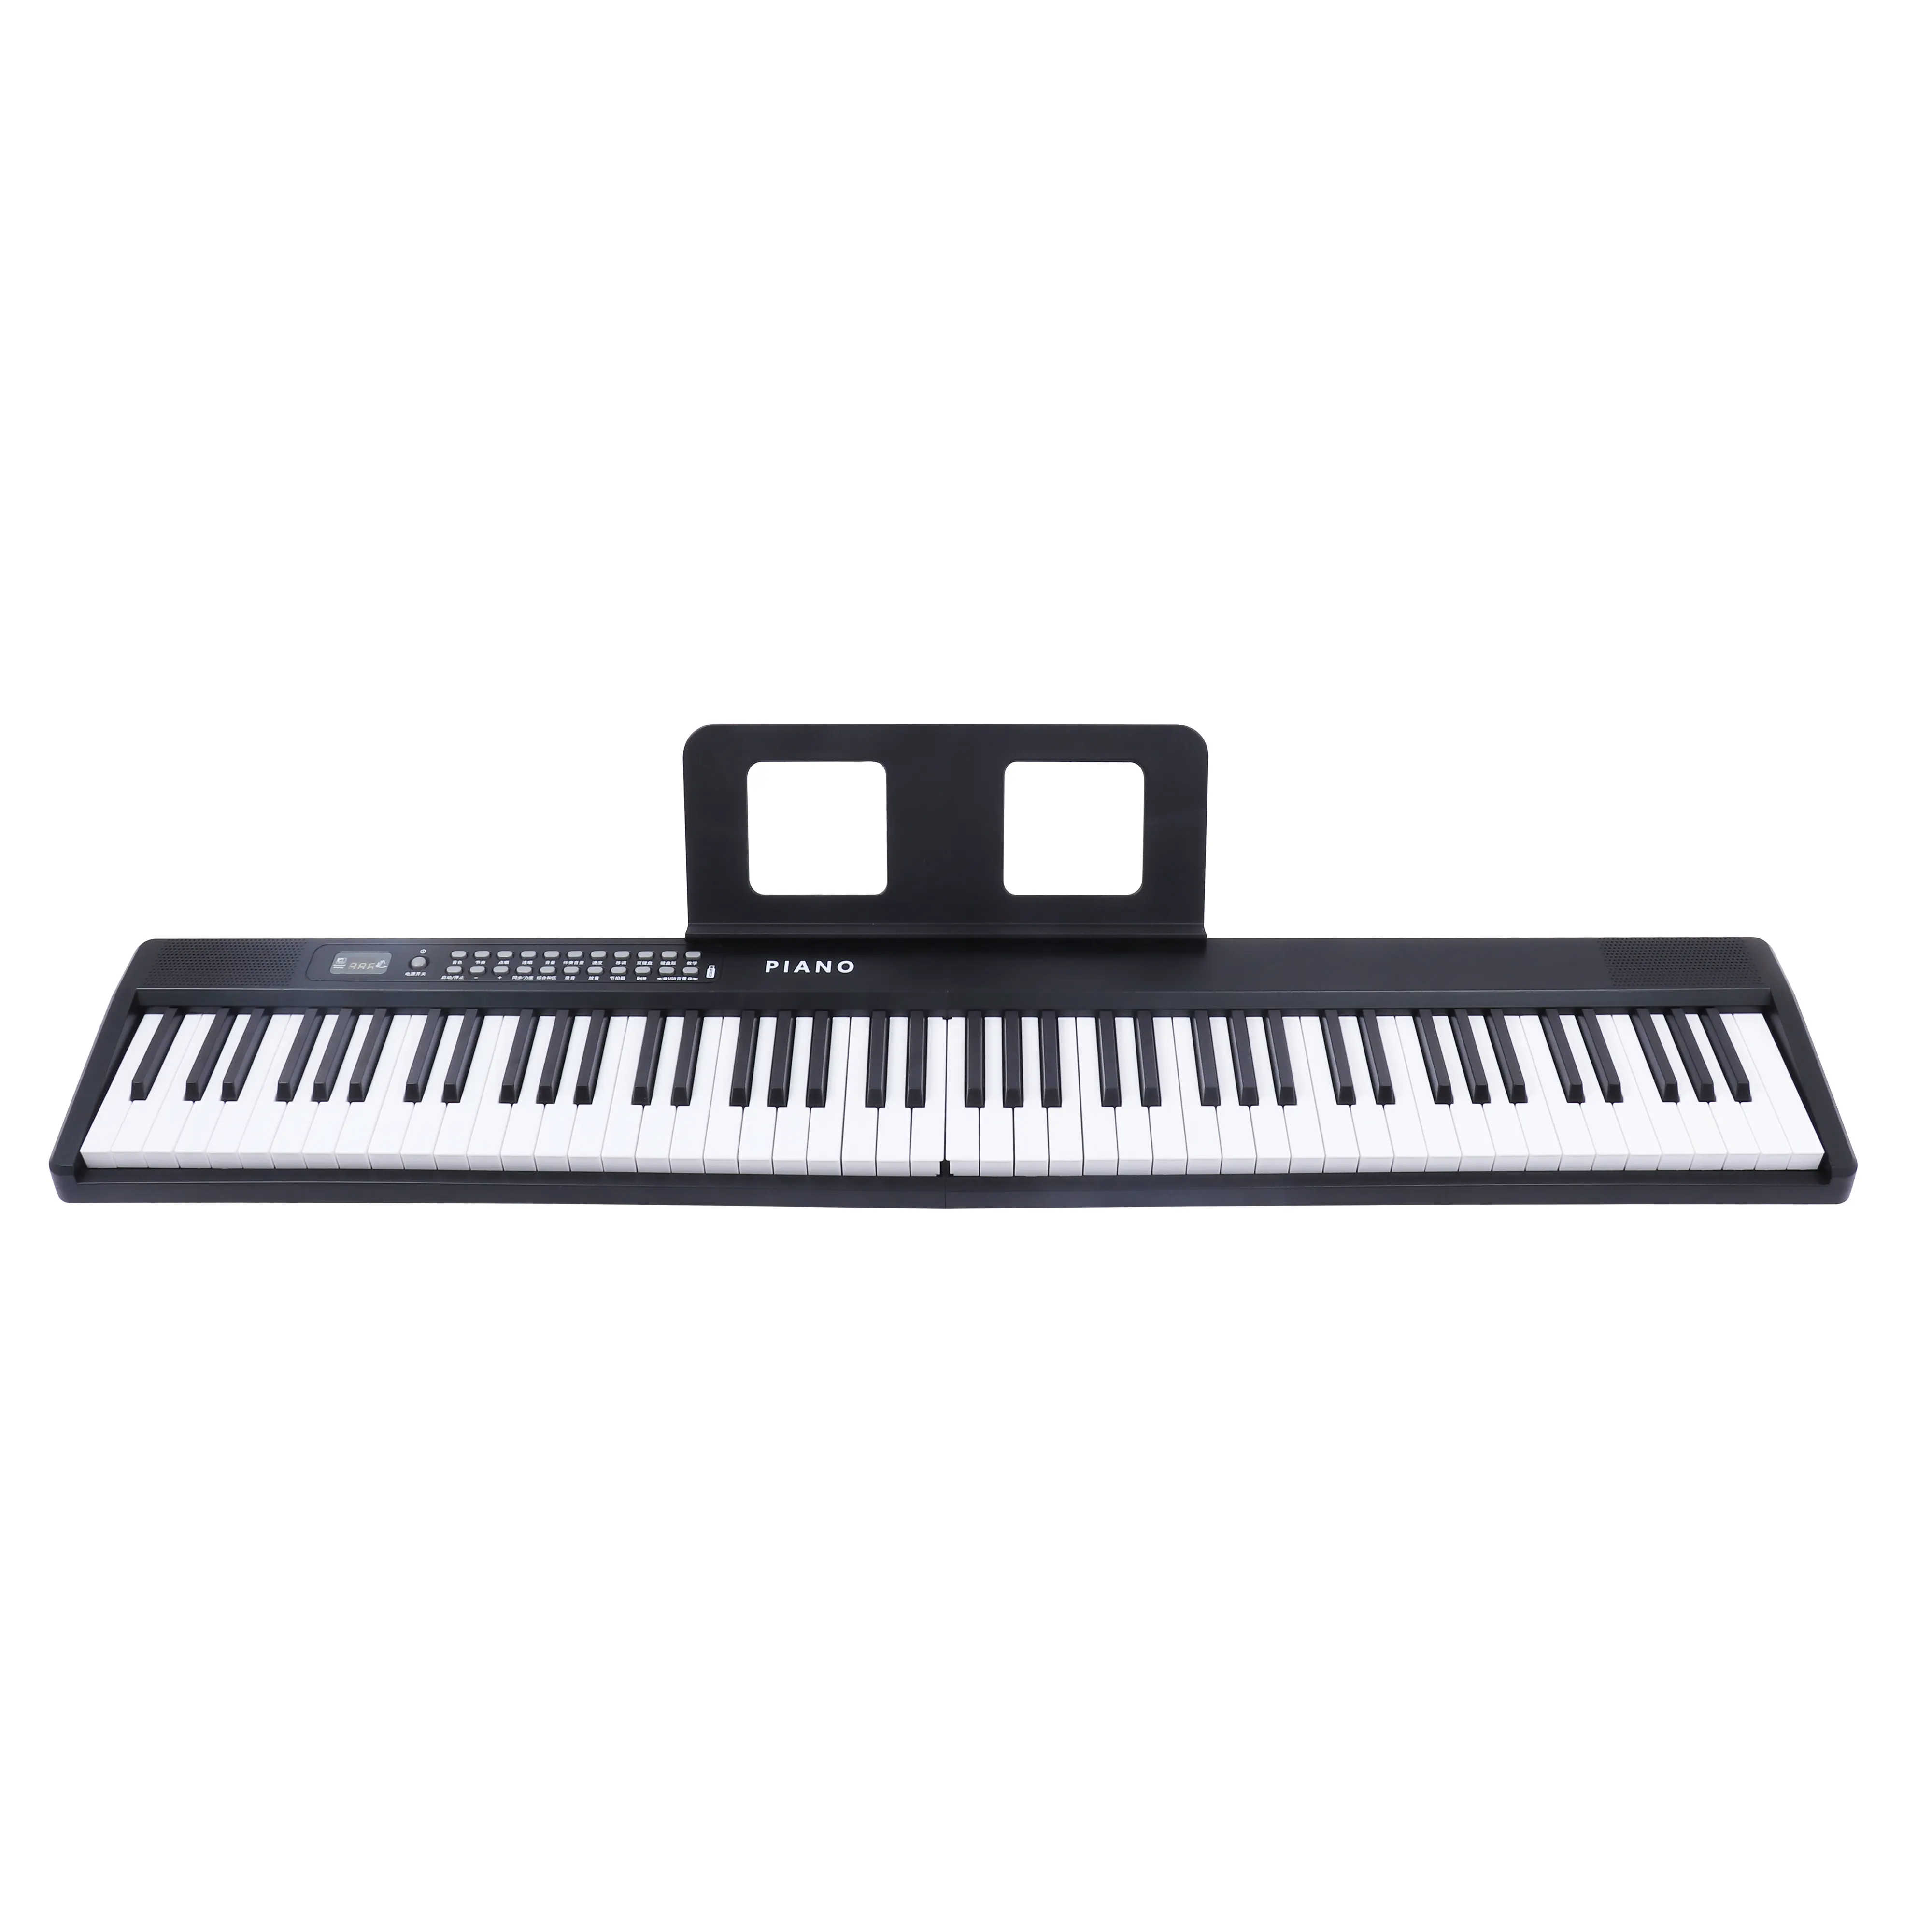 बिक्री के लिए बडू नया मॉडल पियानो 88-कुंजियाँ फोल्डेबल इलेक्ट्रॉनिक पियानो कीबोर्ड सिंथेसाइज़र टेक्लाडोस फोल्डिंग म्यूजिकल कीबोर्ड